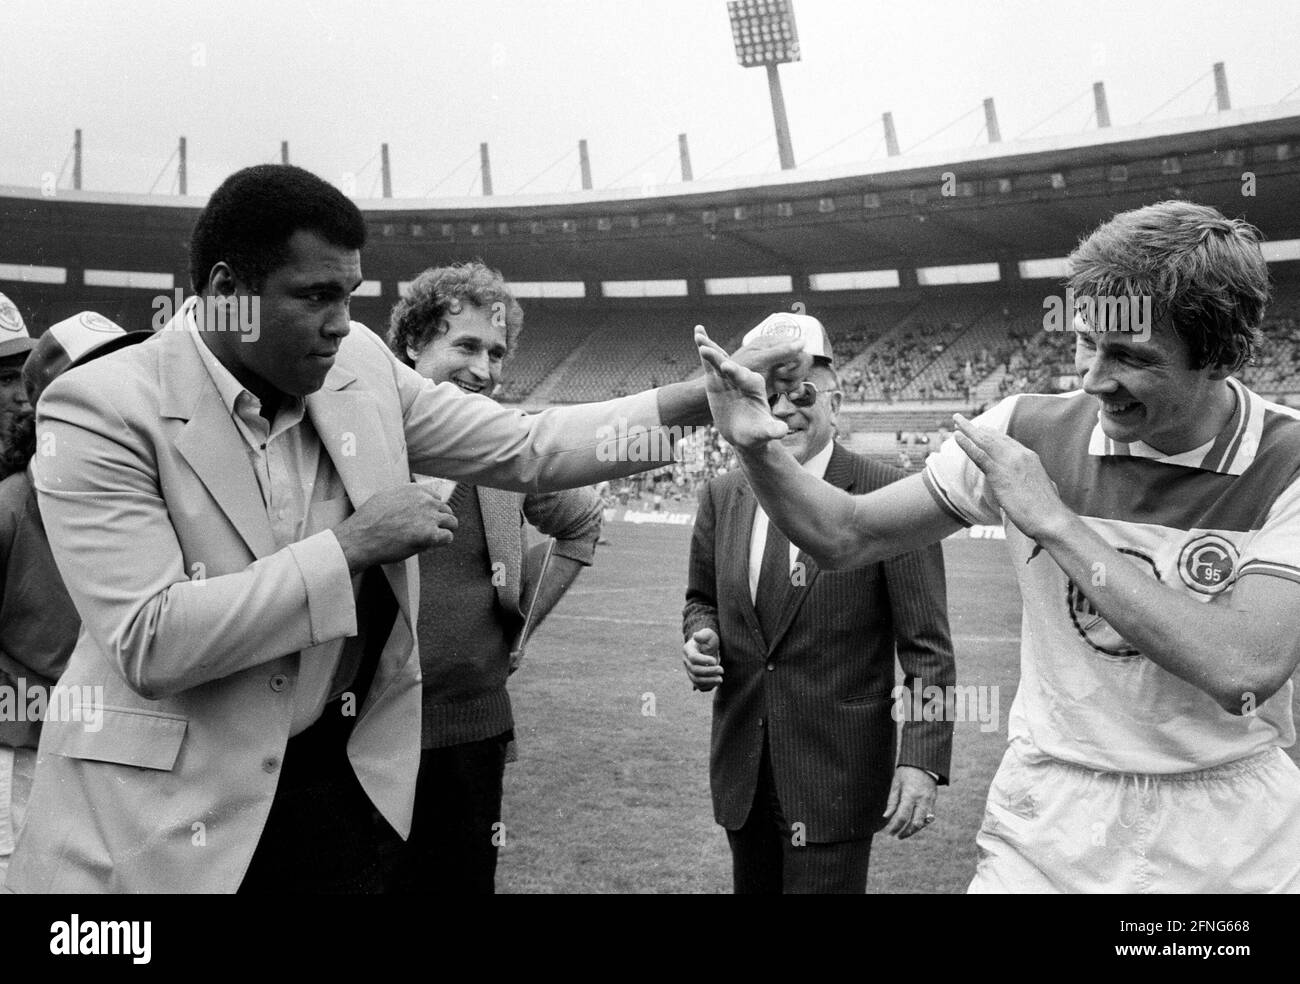 Boxlegende Muhammad Ali (Cassius Clay) besuchte das Rheinstadion in Düsseldorf anlässlich des Bundesliga-Spiels Fortuna - Eintr. Braunschweig am 15.9.1984 und forderte Atli Edvaldsson zu einem Sparringsspiel heraus. [Automatisierte Übersetzung] Stockfoto